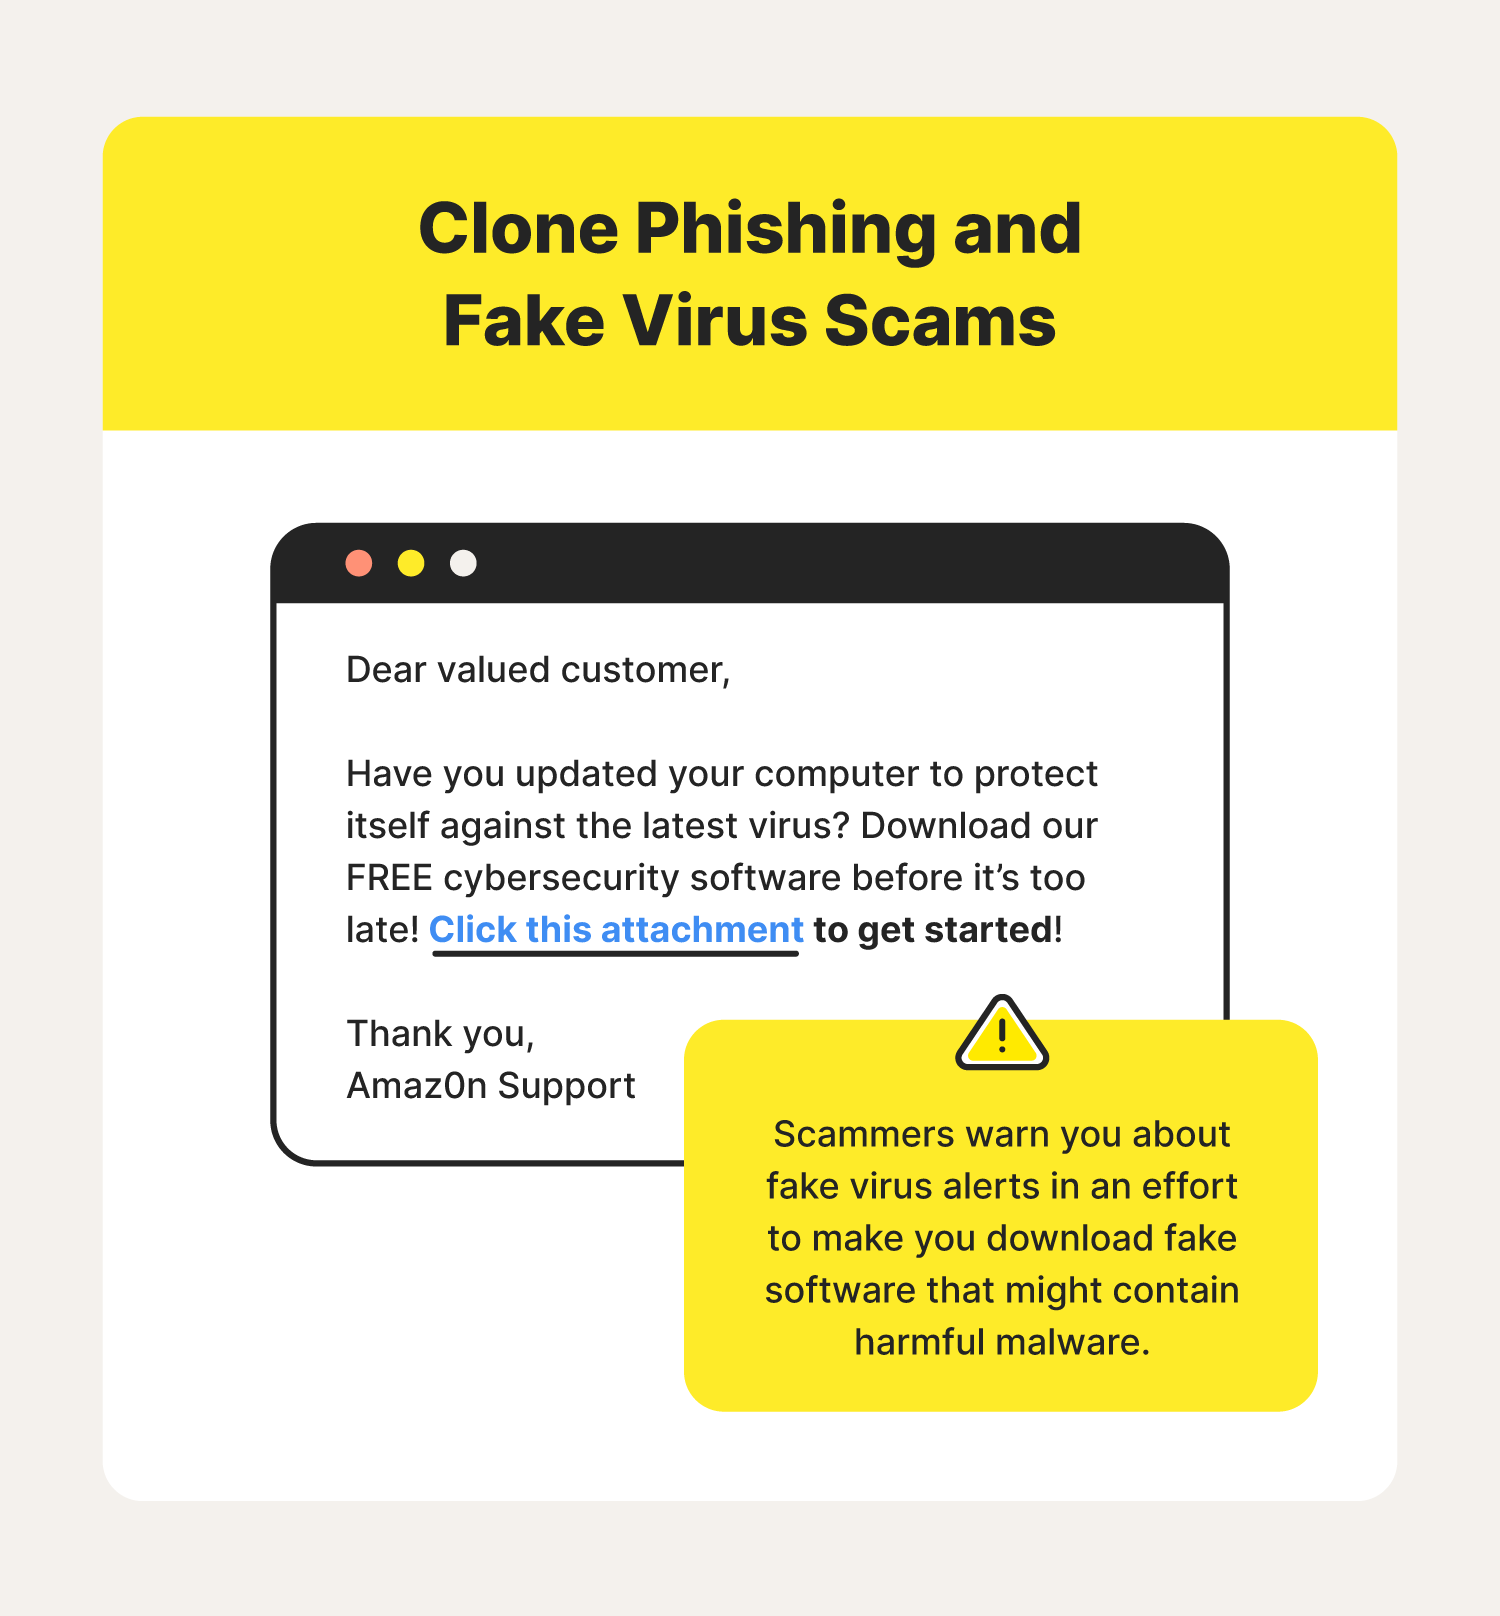 fake virus scams